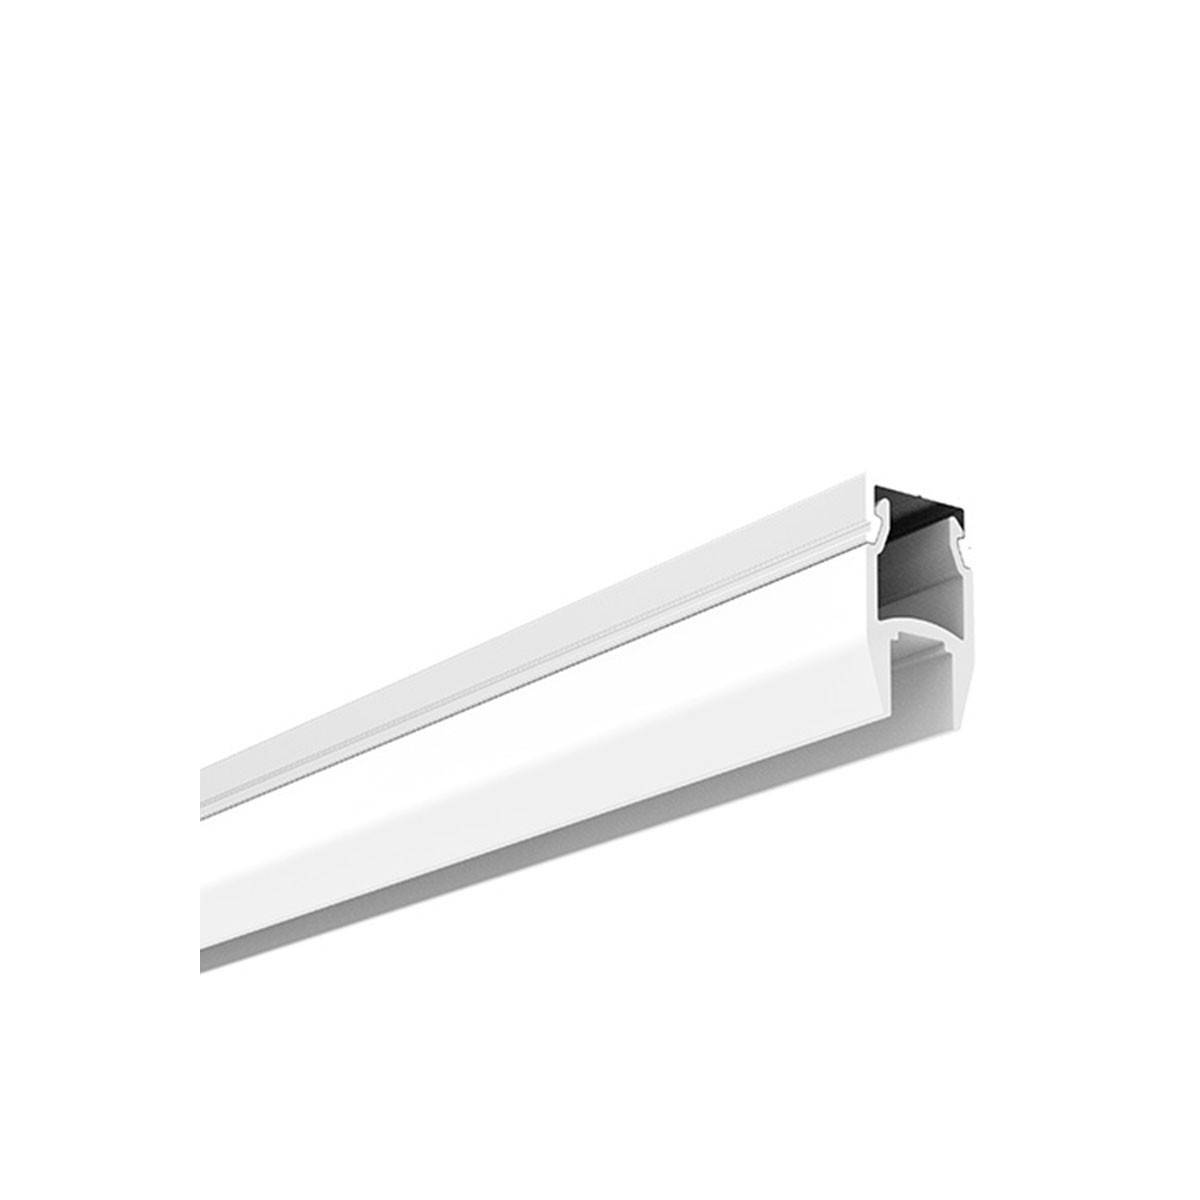  Bases de la lámpara perfil de tira led de 1.6 ft para 5050 3528  5630 y tira de LED blanca tira led perfil aluminio tira perfil - (Color:  1PC; Tipo de